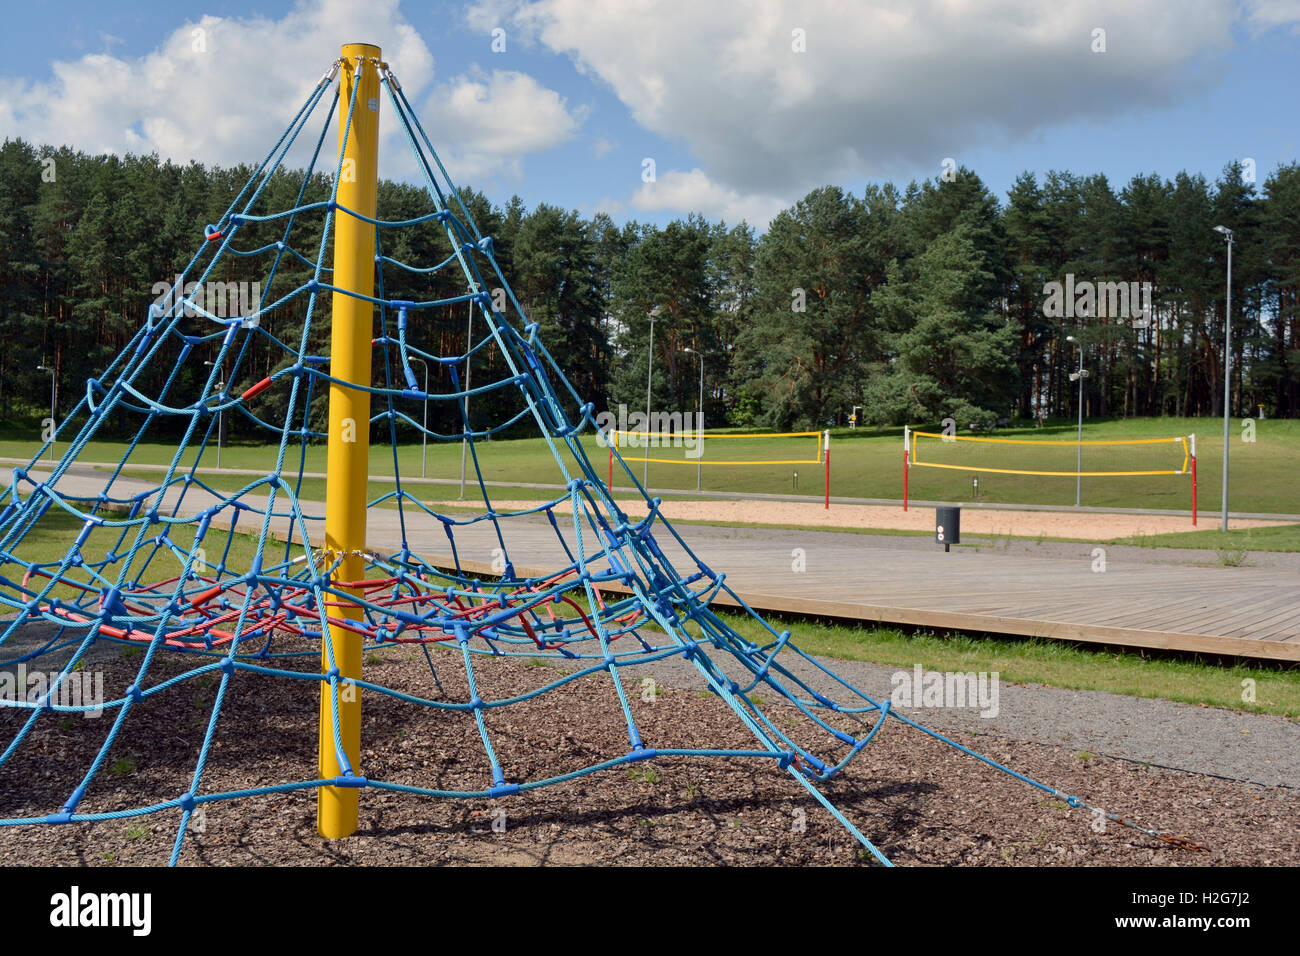 Volleyball-Netz und Spielplatz Ausrüstung an sonnigen Sommertag  Stockfotografie - Alamy